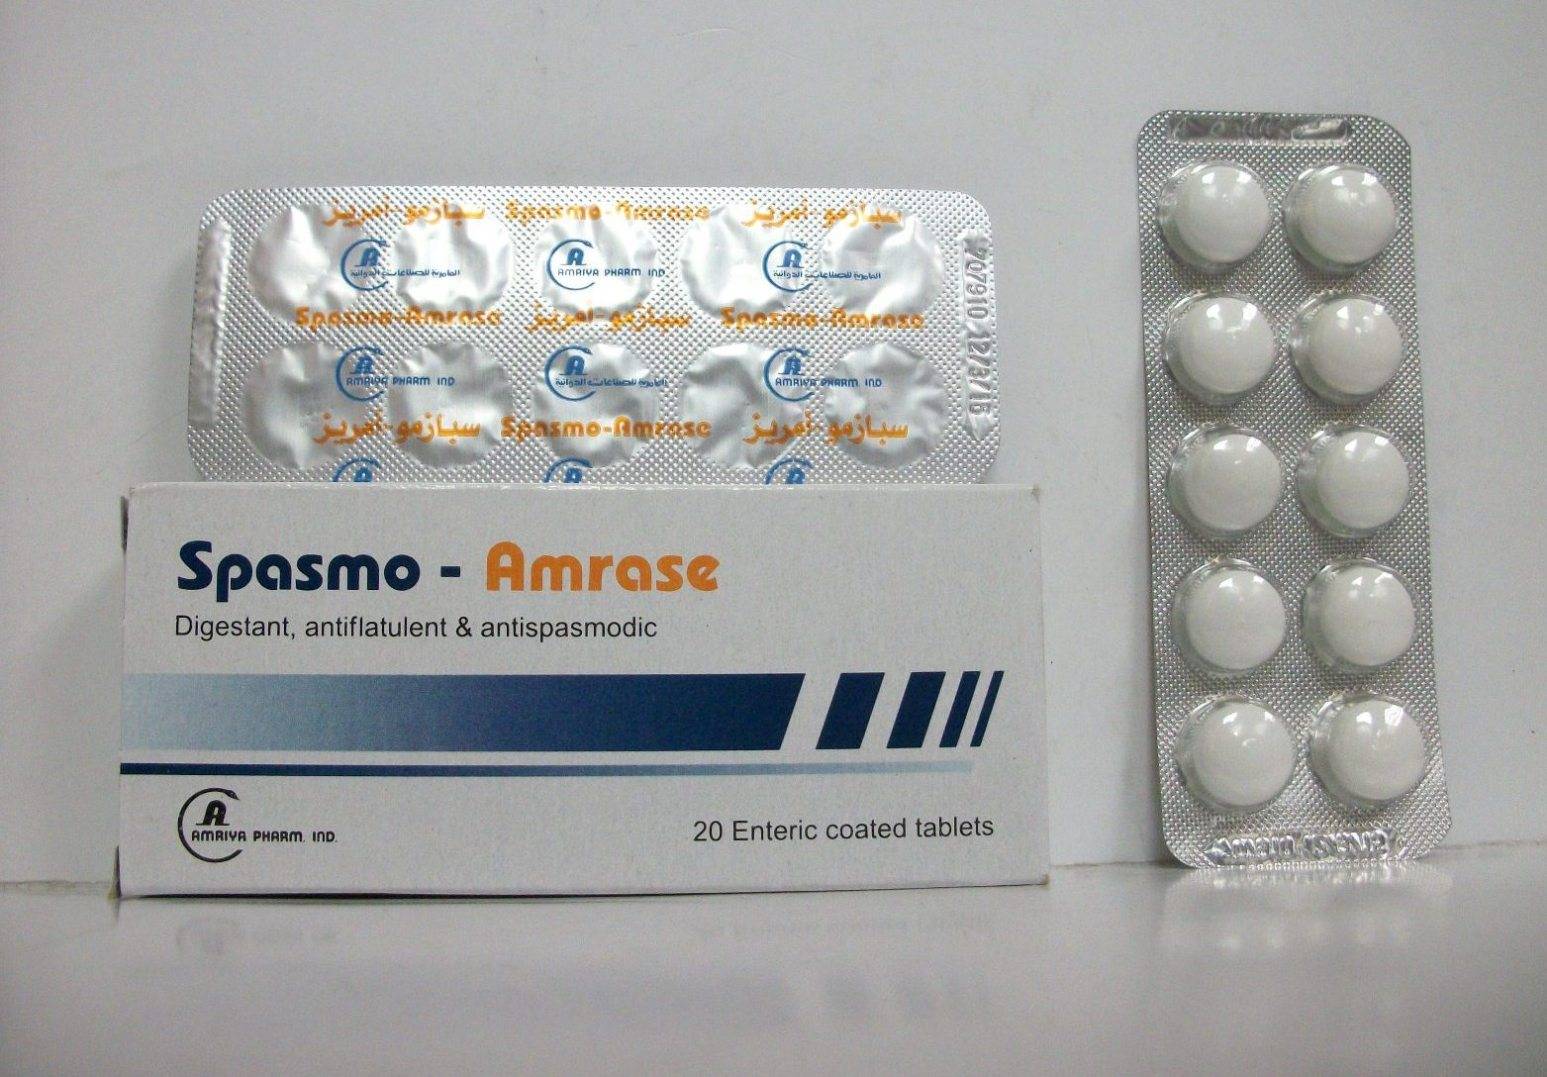 Spasmo-amrase - Tablets